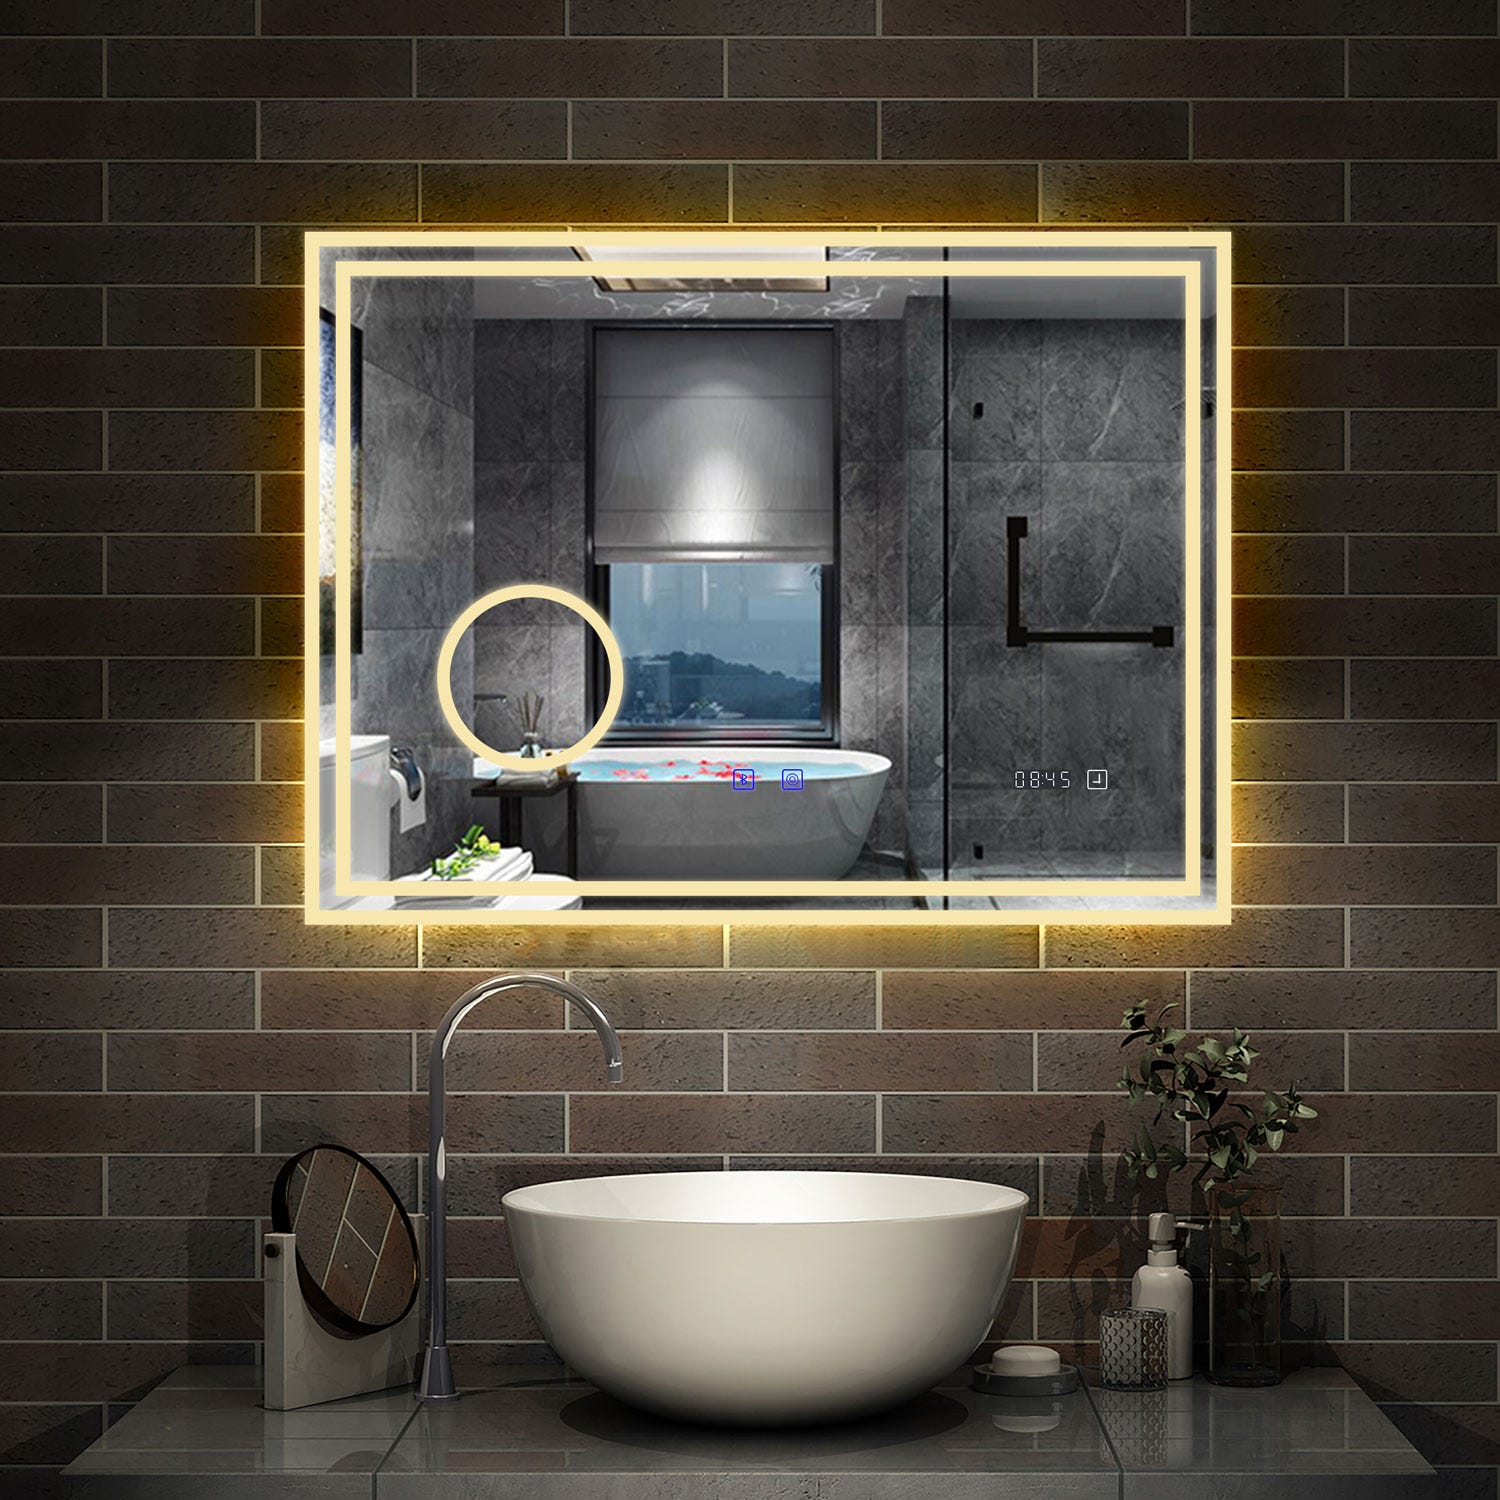 AICA LED miroir 100x60cm horloge + bluetooth + miroir grossissant + tricolore + tactile + anti-buée, suspendu horizontalement ,miroir salle de bain 4